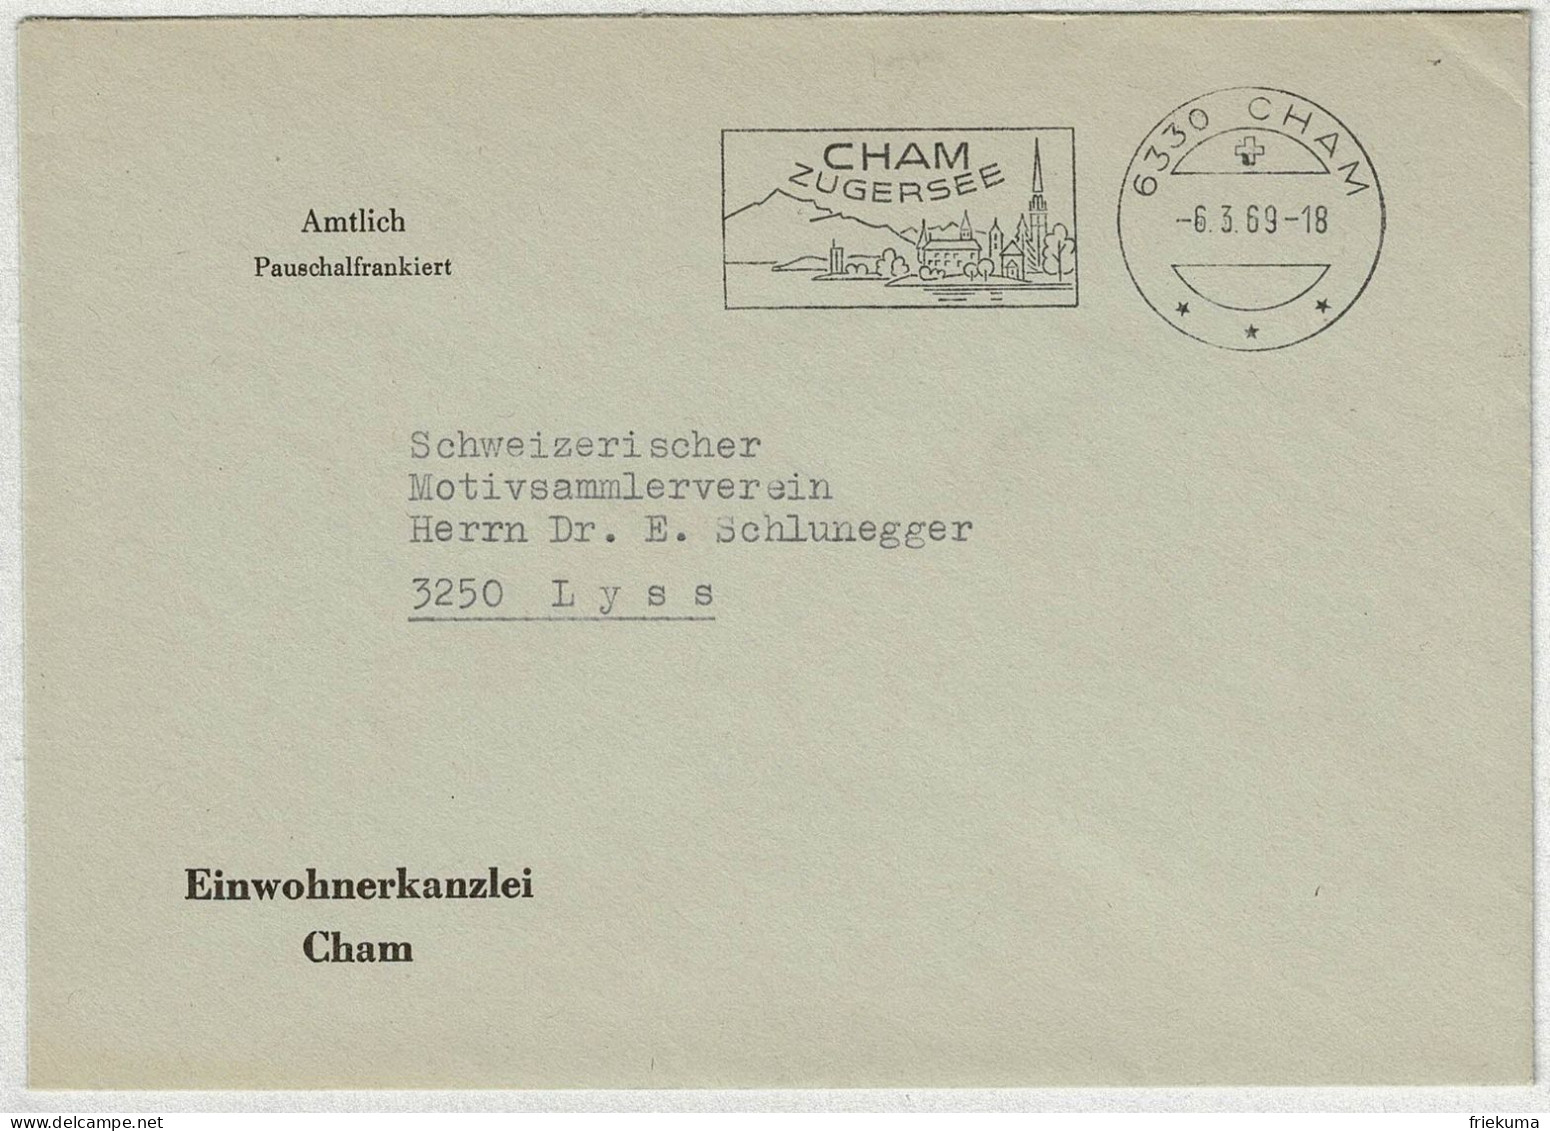 Schweiz 1969, Brief Amtlich Pauschalfrankiert Cham - Lyss - Marcophilie